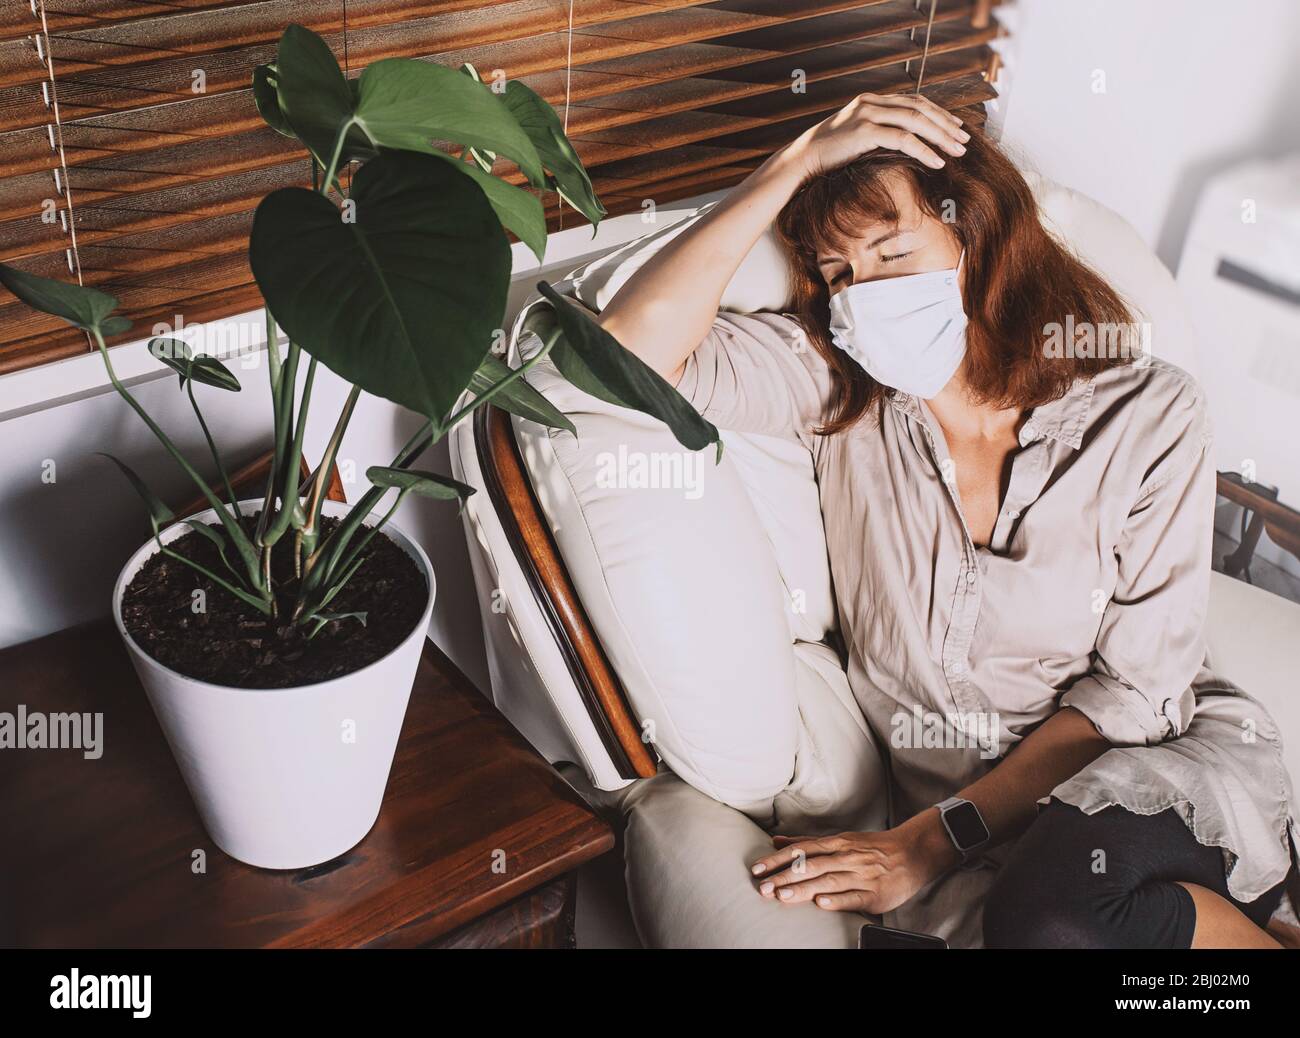 Frau mittleren Alters trägt eine Gesichtsmaske, sitzt auf einem Sessel mit geschlossenen Augen, fühlt sich erschöpft oder krank. Sperrung der Corona COVID-19-Quarantäne. Stockfoto